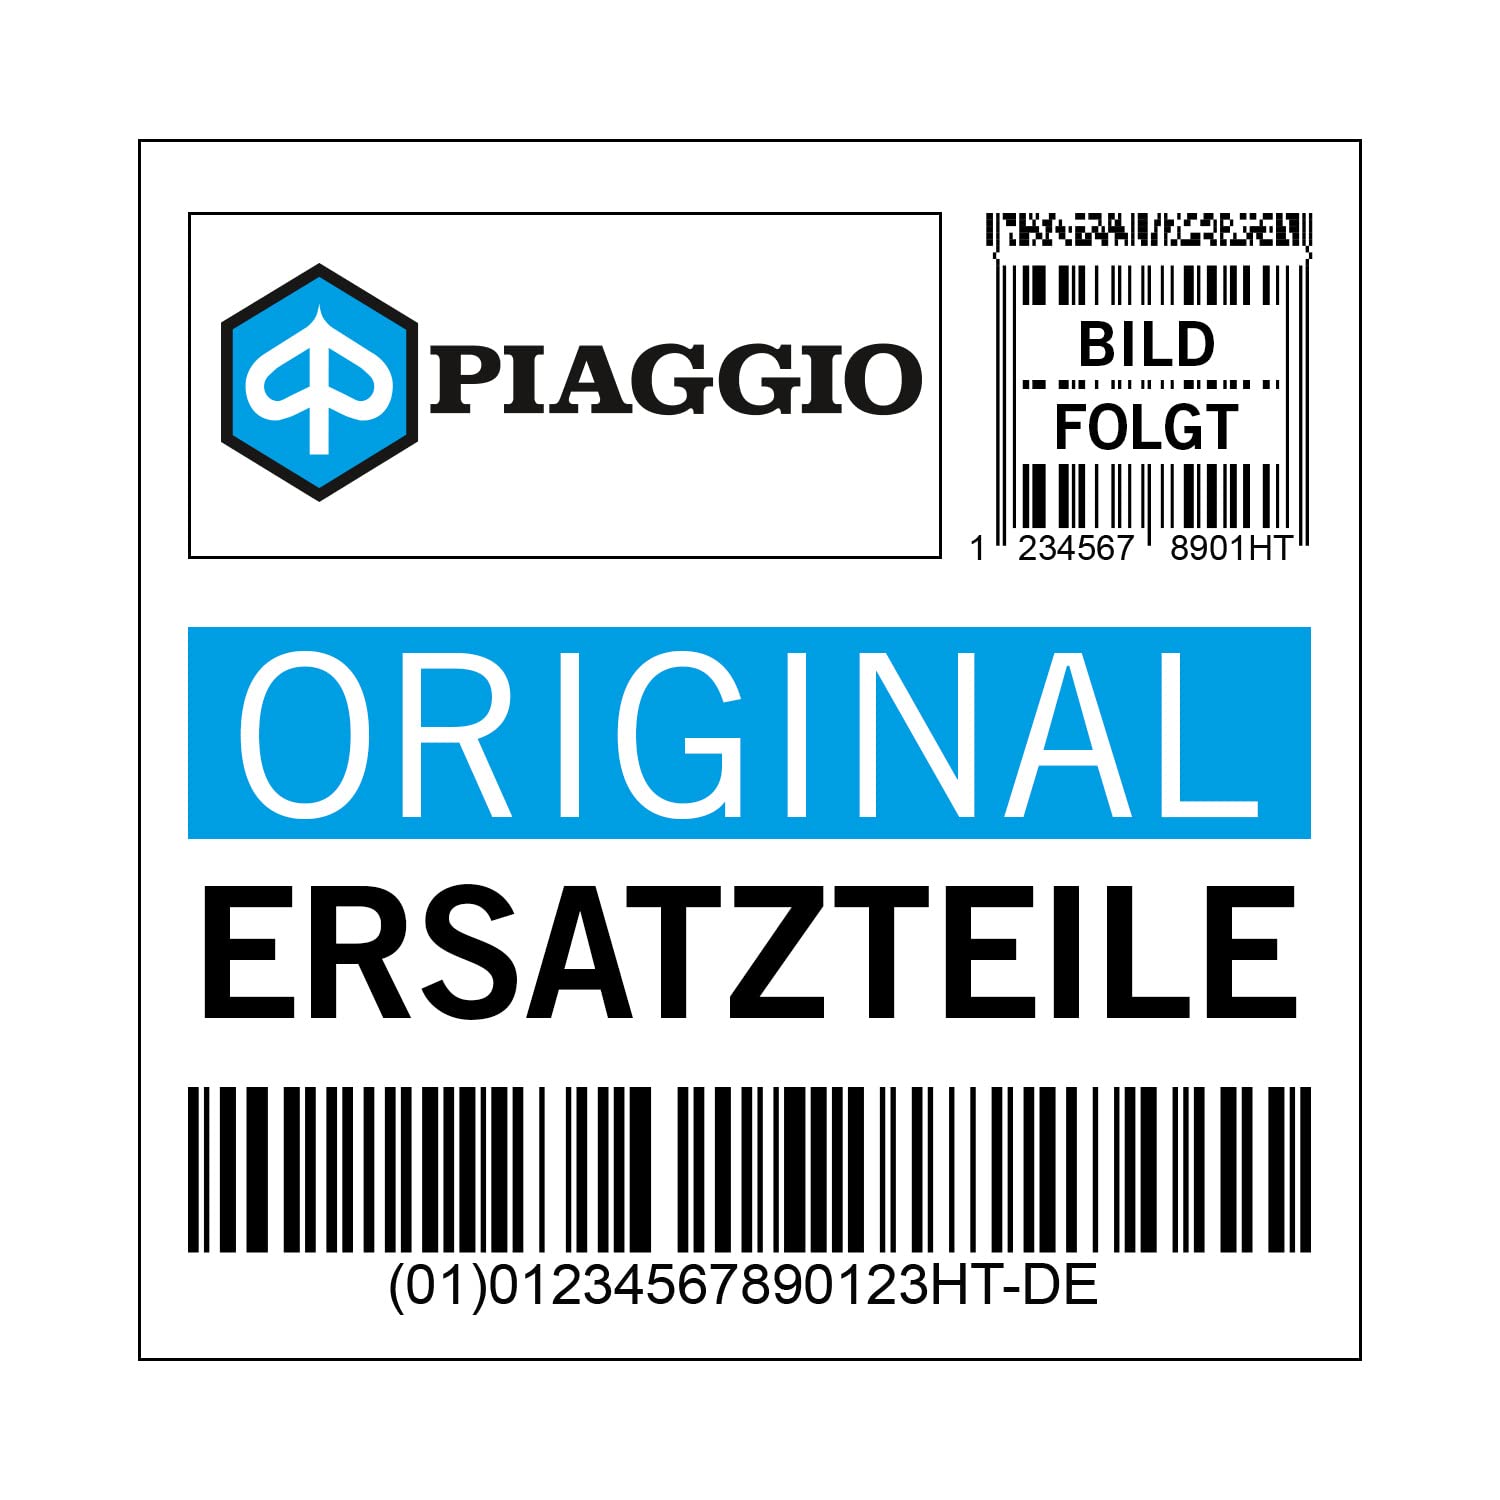 Deckel Piaggio Schalter für GTS 125, 1B004361 von Maxtuned